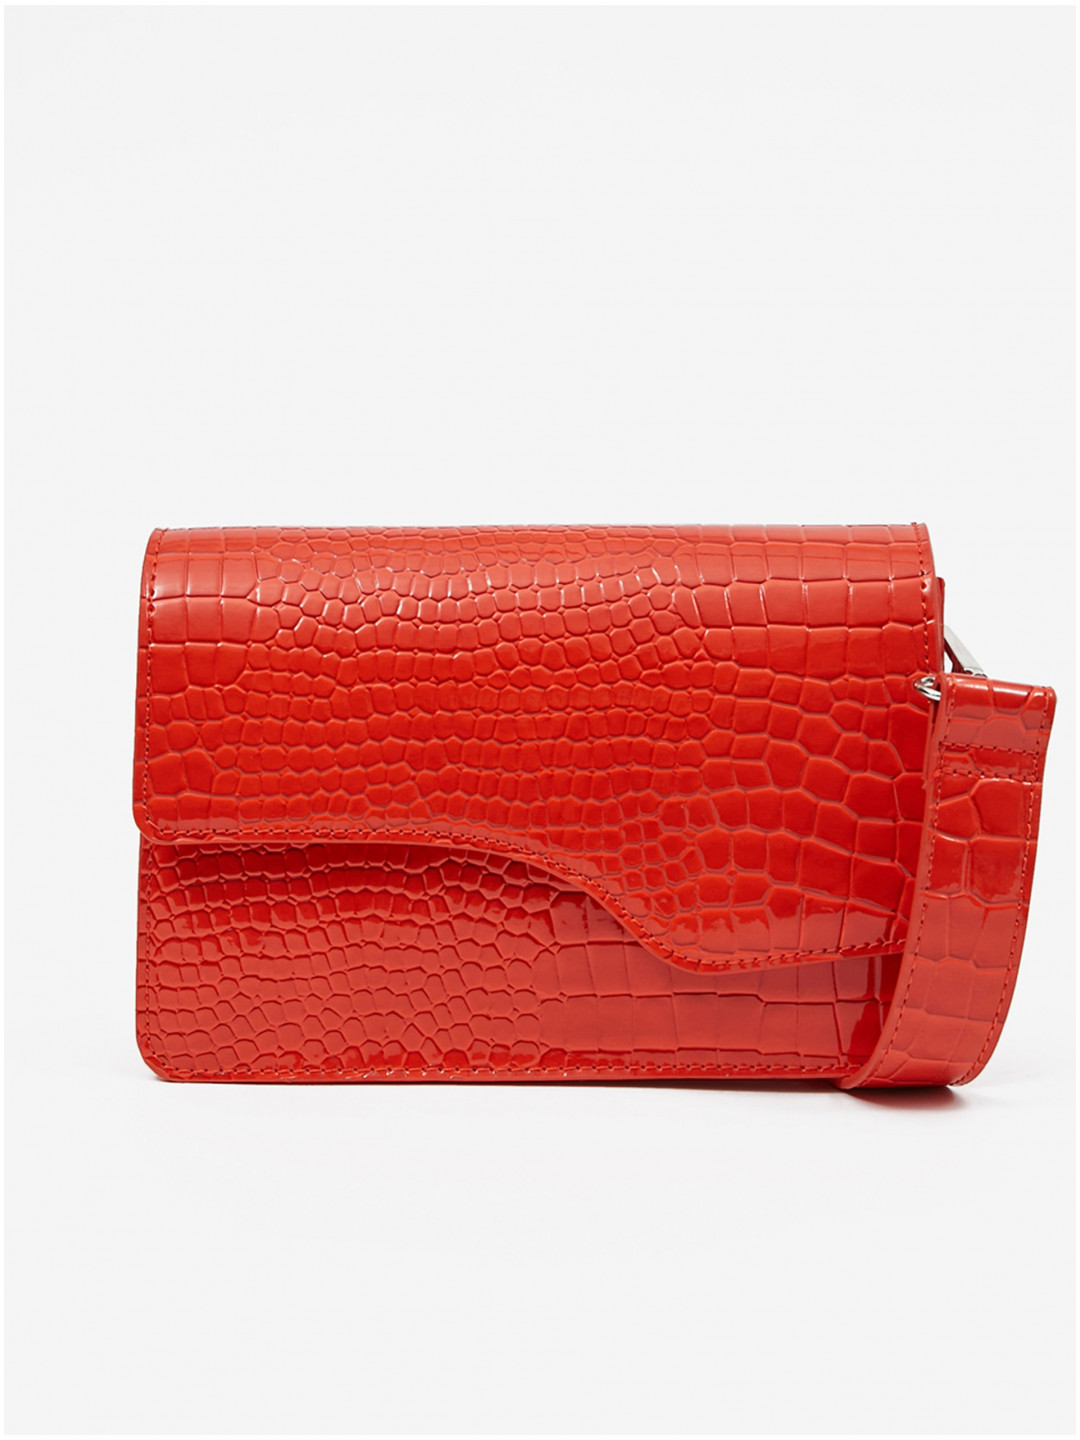 Červená dámská crossbody kabelka s krokodýlím vzorem Pieces Bunna